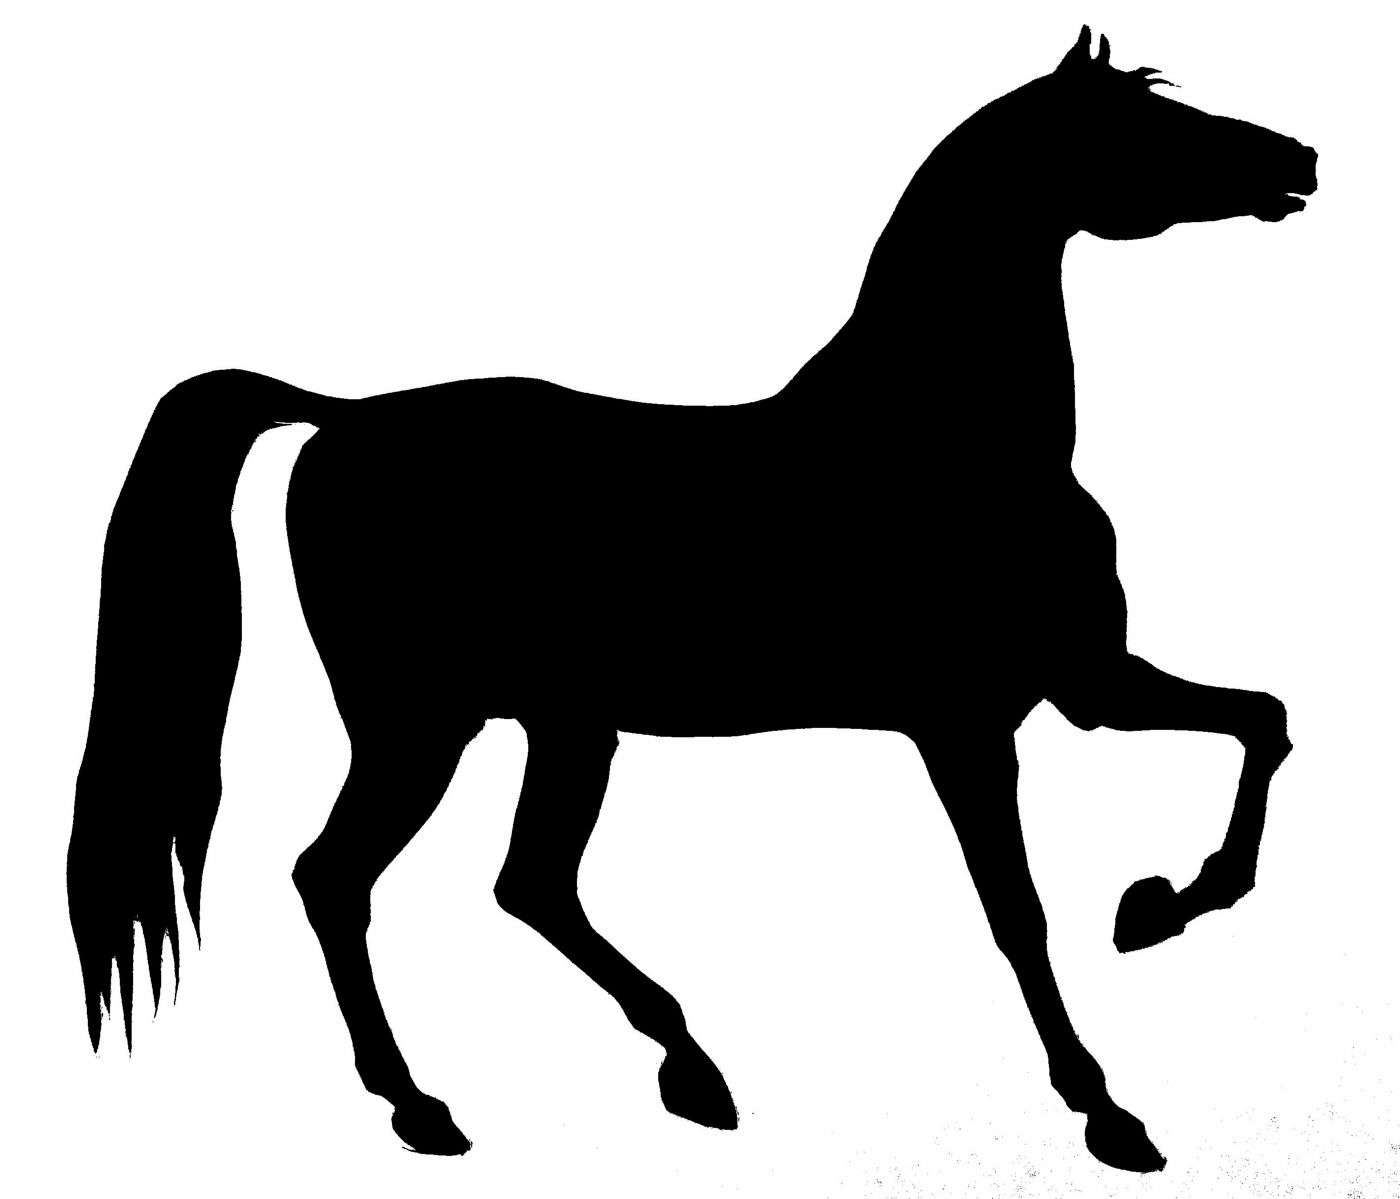 saraccino Horse silhouette / stencil...